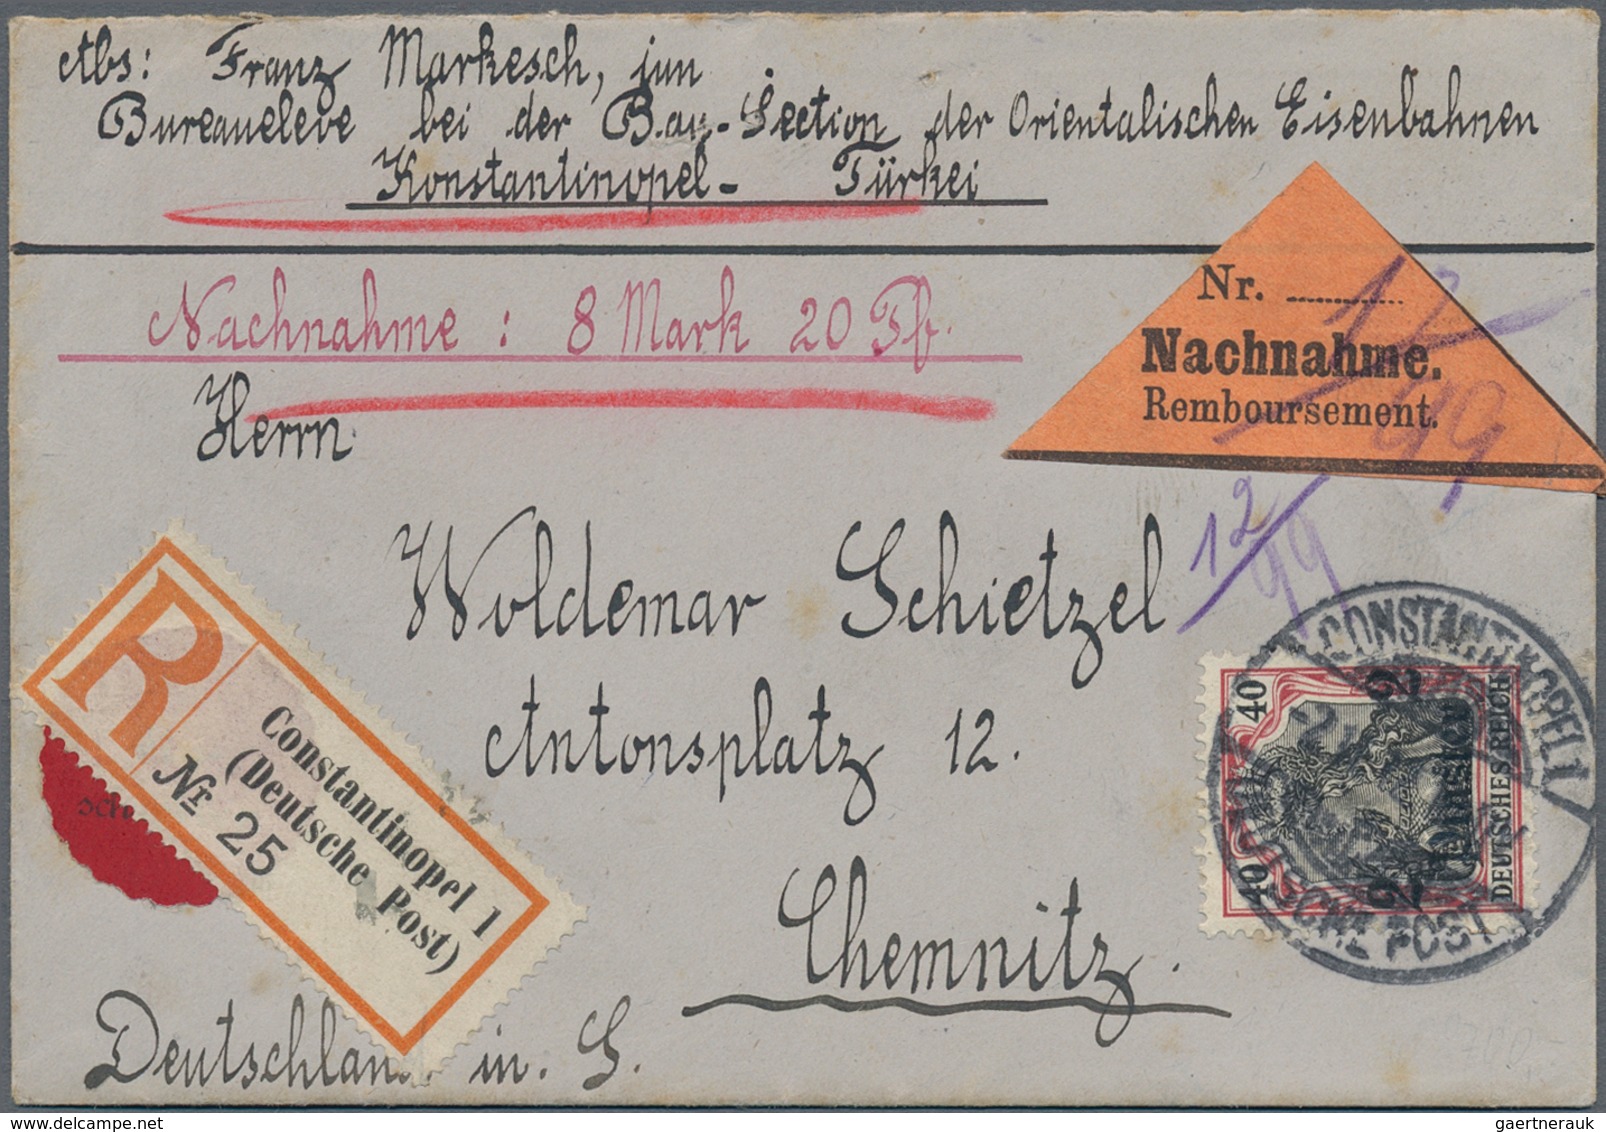 Deutsche Post in der Türkei: 1881/1914, Sammlungsbestand von insgesamt 113 Belegen mit div. Besonder